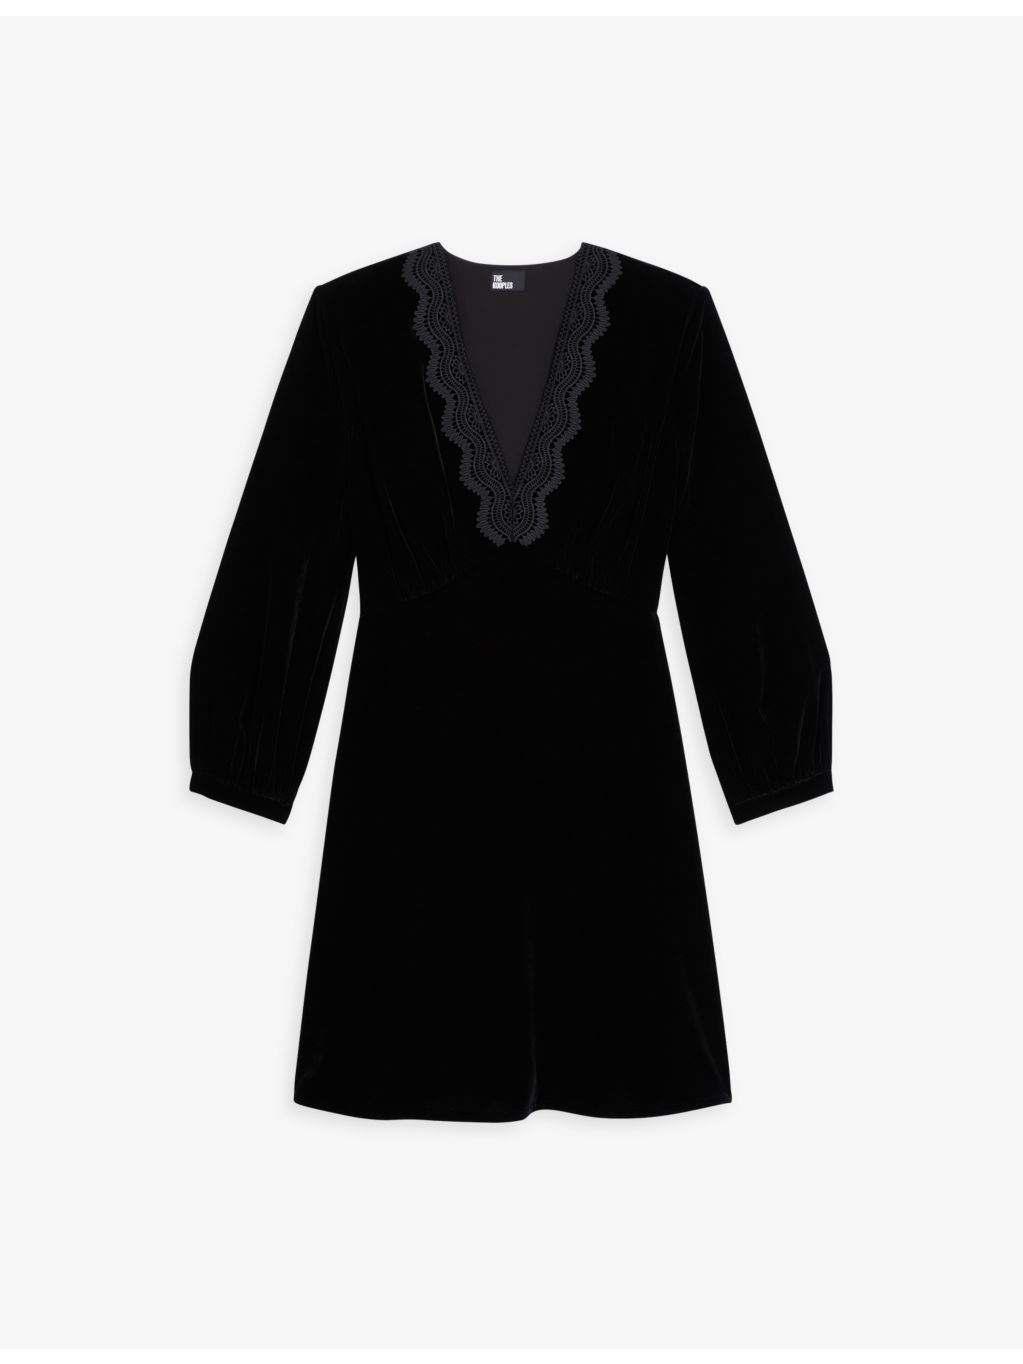 THE KOOPLES - V-neck lace-embroidered velvet mini dress